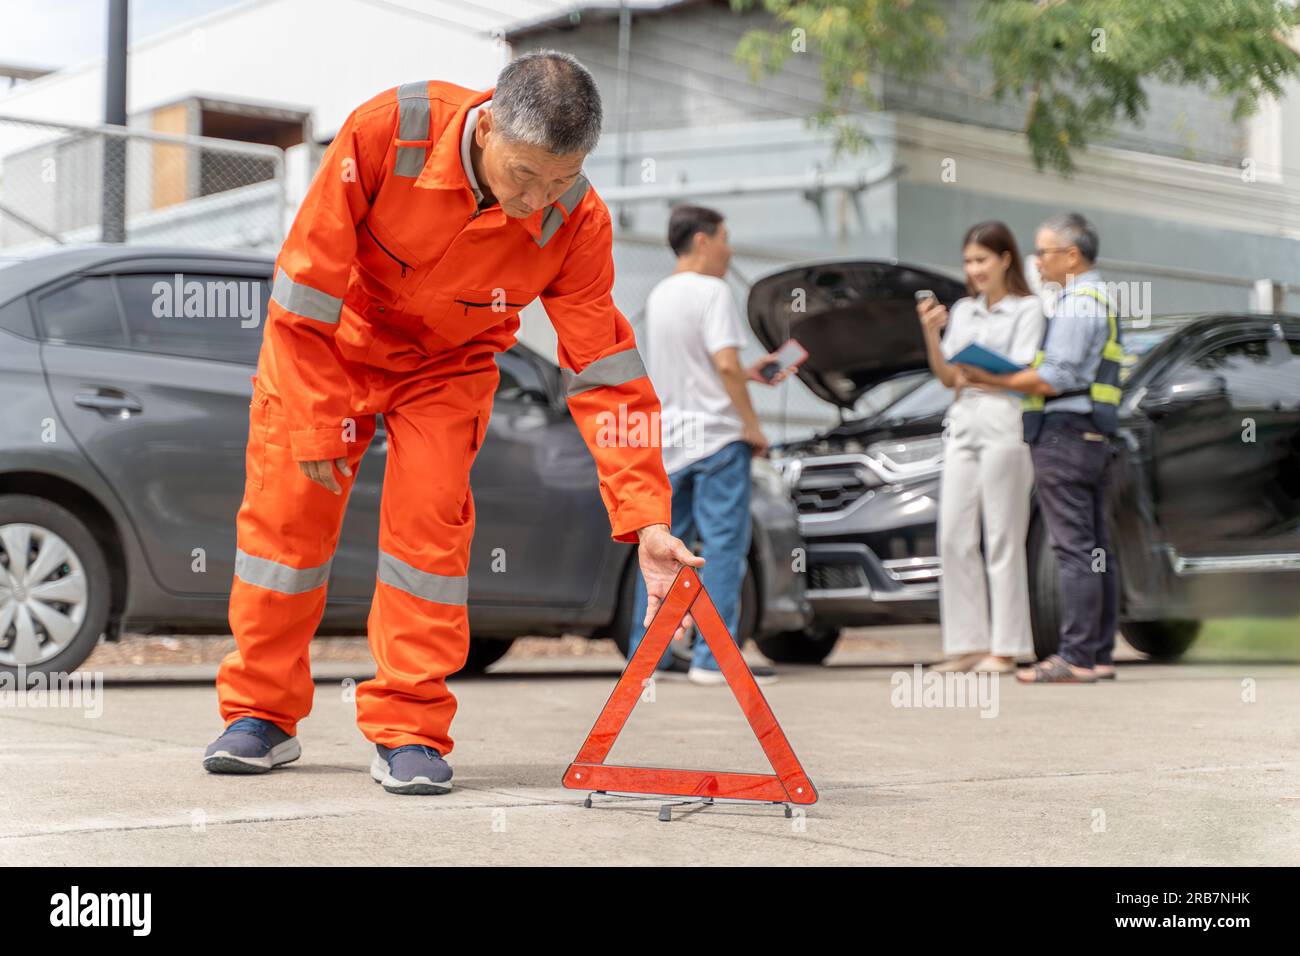 Ein Versicherungsagent in orangefarbenem Overall, der ein Warndreieck auf der Straße in der Nähe des Autounfalls platziert, während ein anderer Versicherungsagent mit ihm spricht Stockfoto